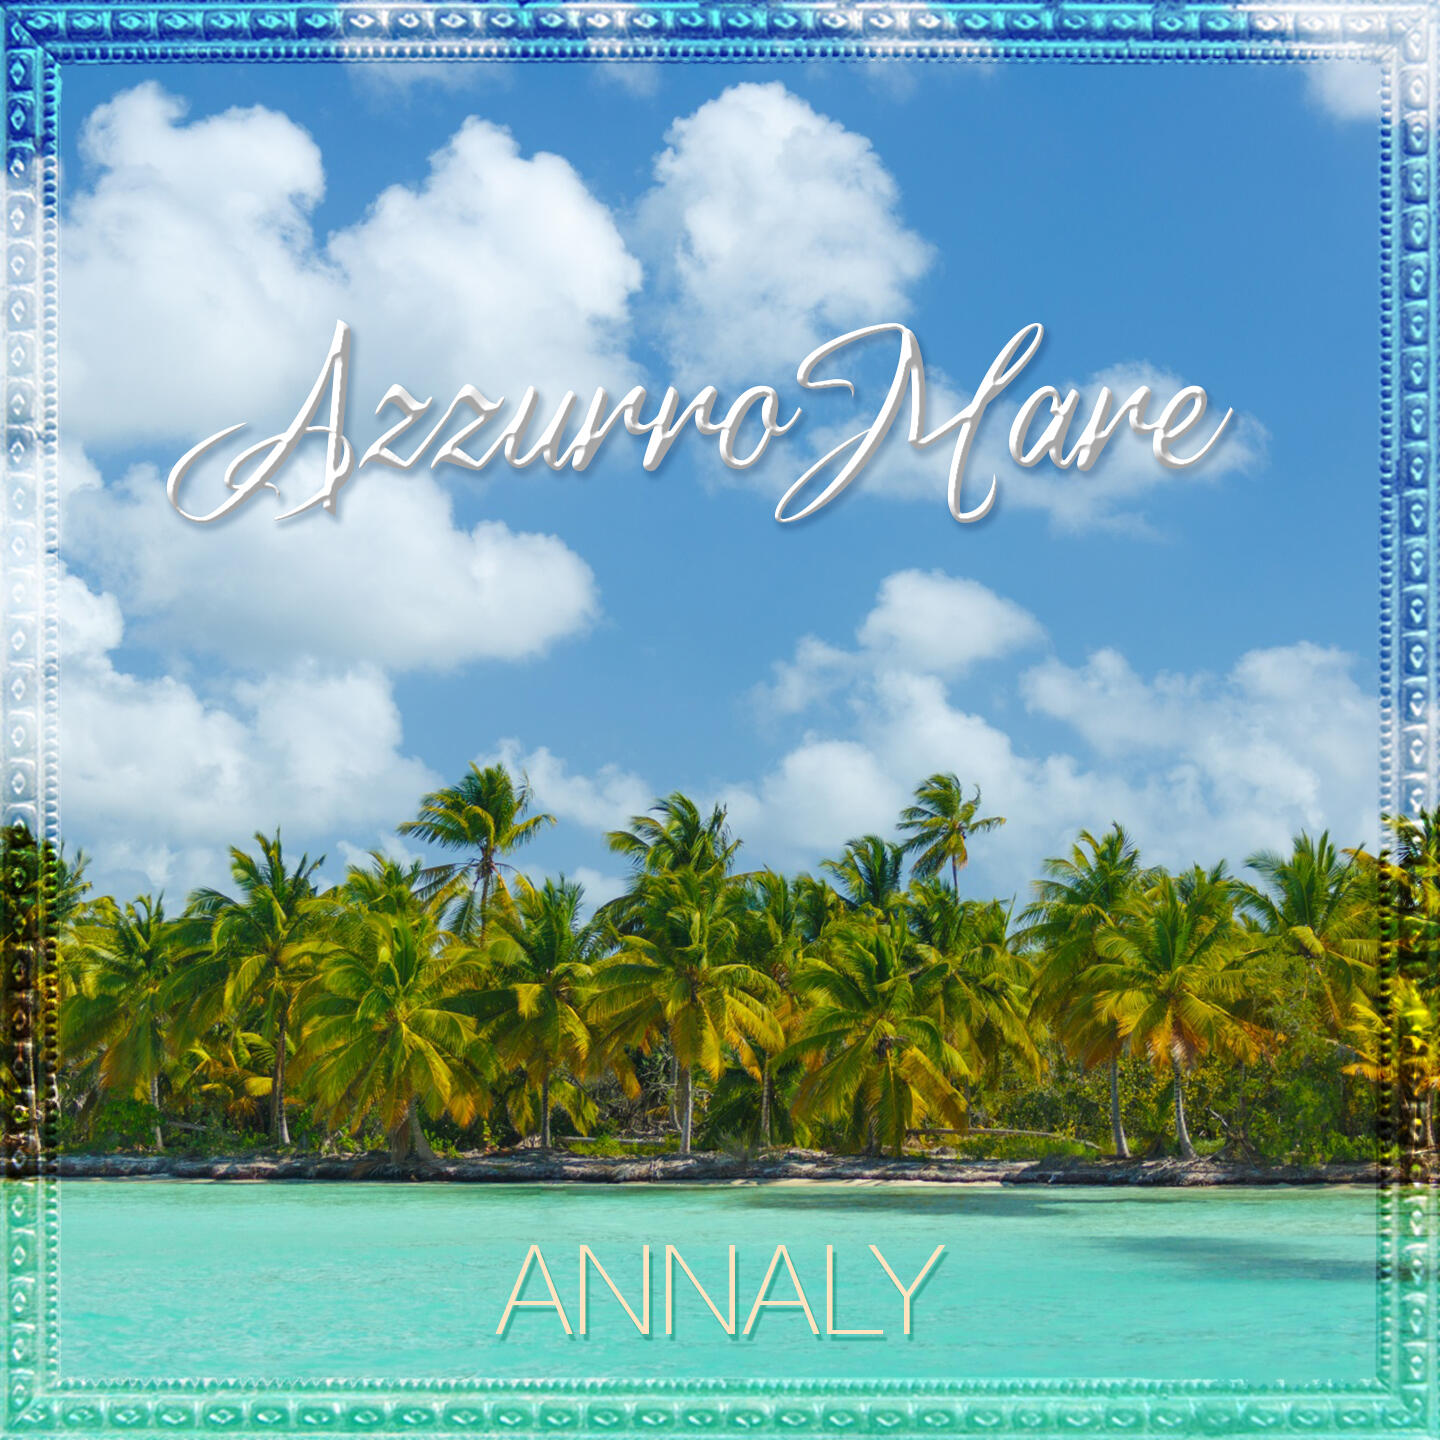 Al momento stai visualizzando “AzzurroMare” è il nuovo singolo di Annaly